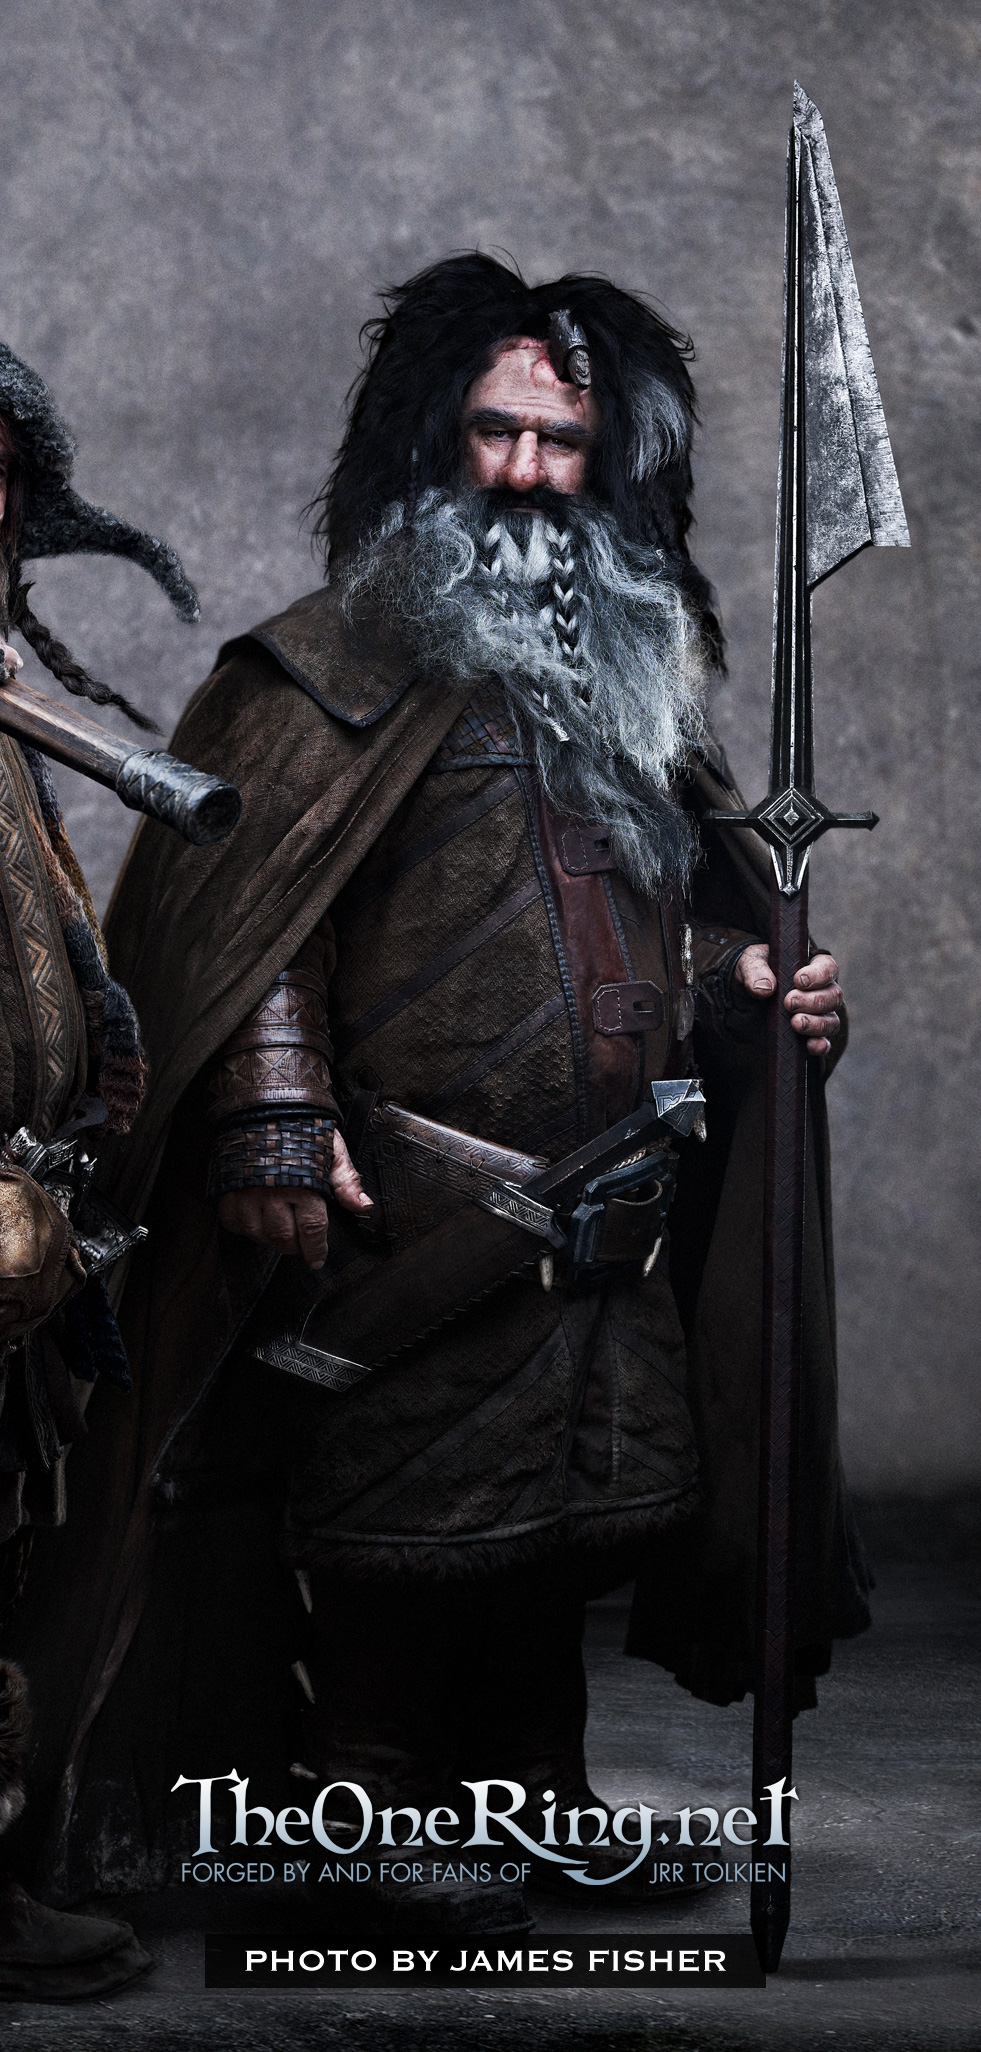 [DUNEDIN ARMAGEDDON] 'The Hobbit' Dwarf Group Bifur-williamkircher